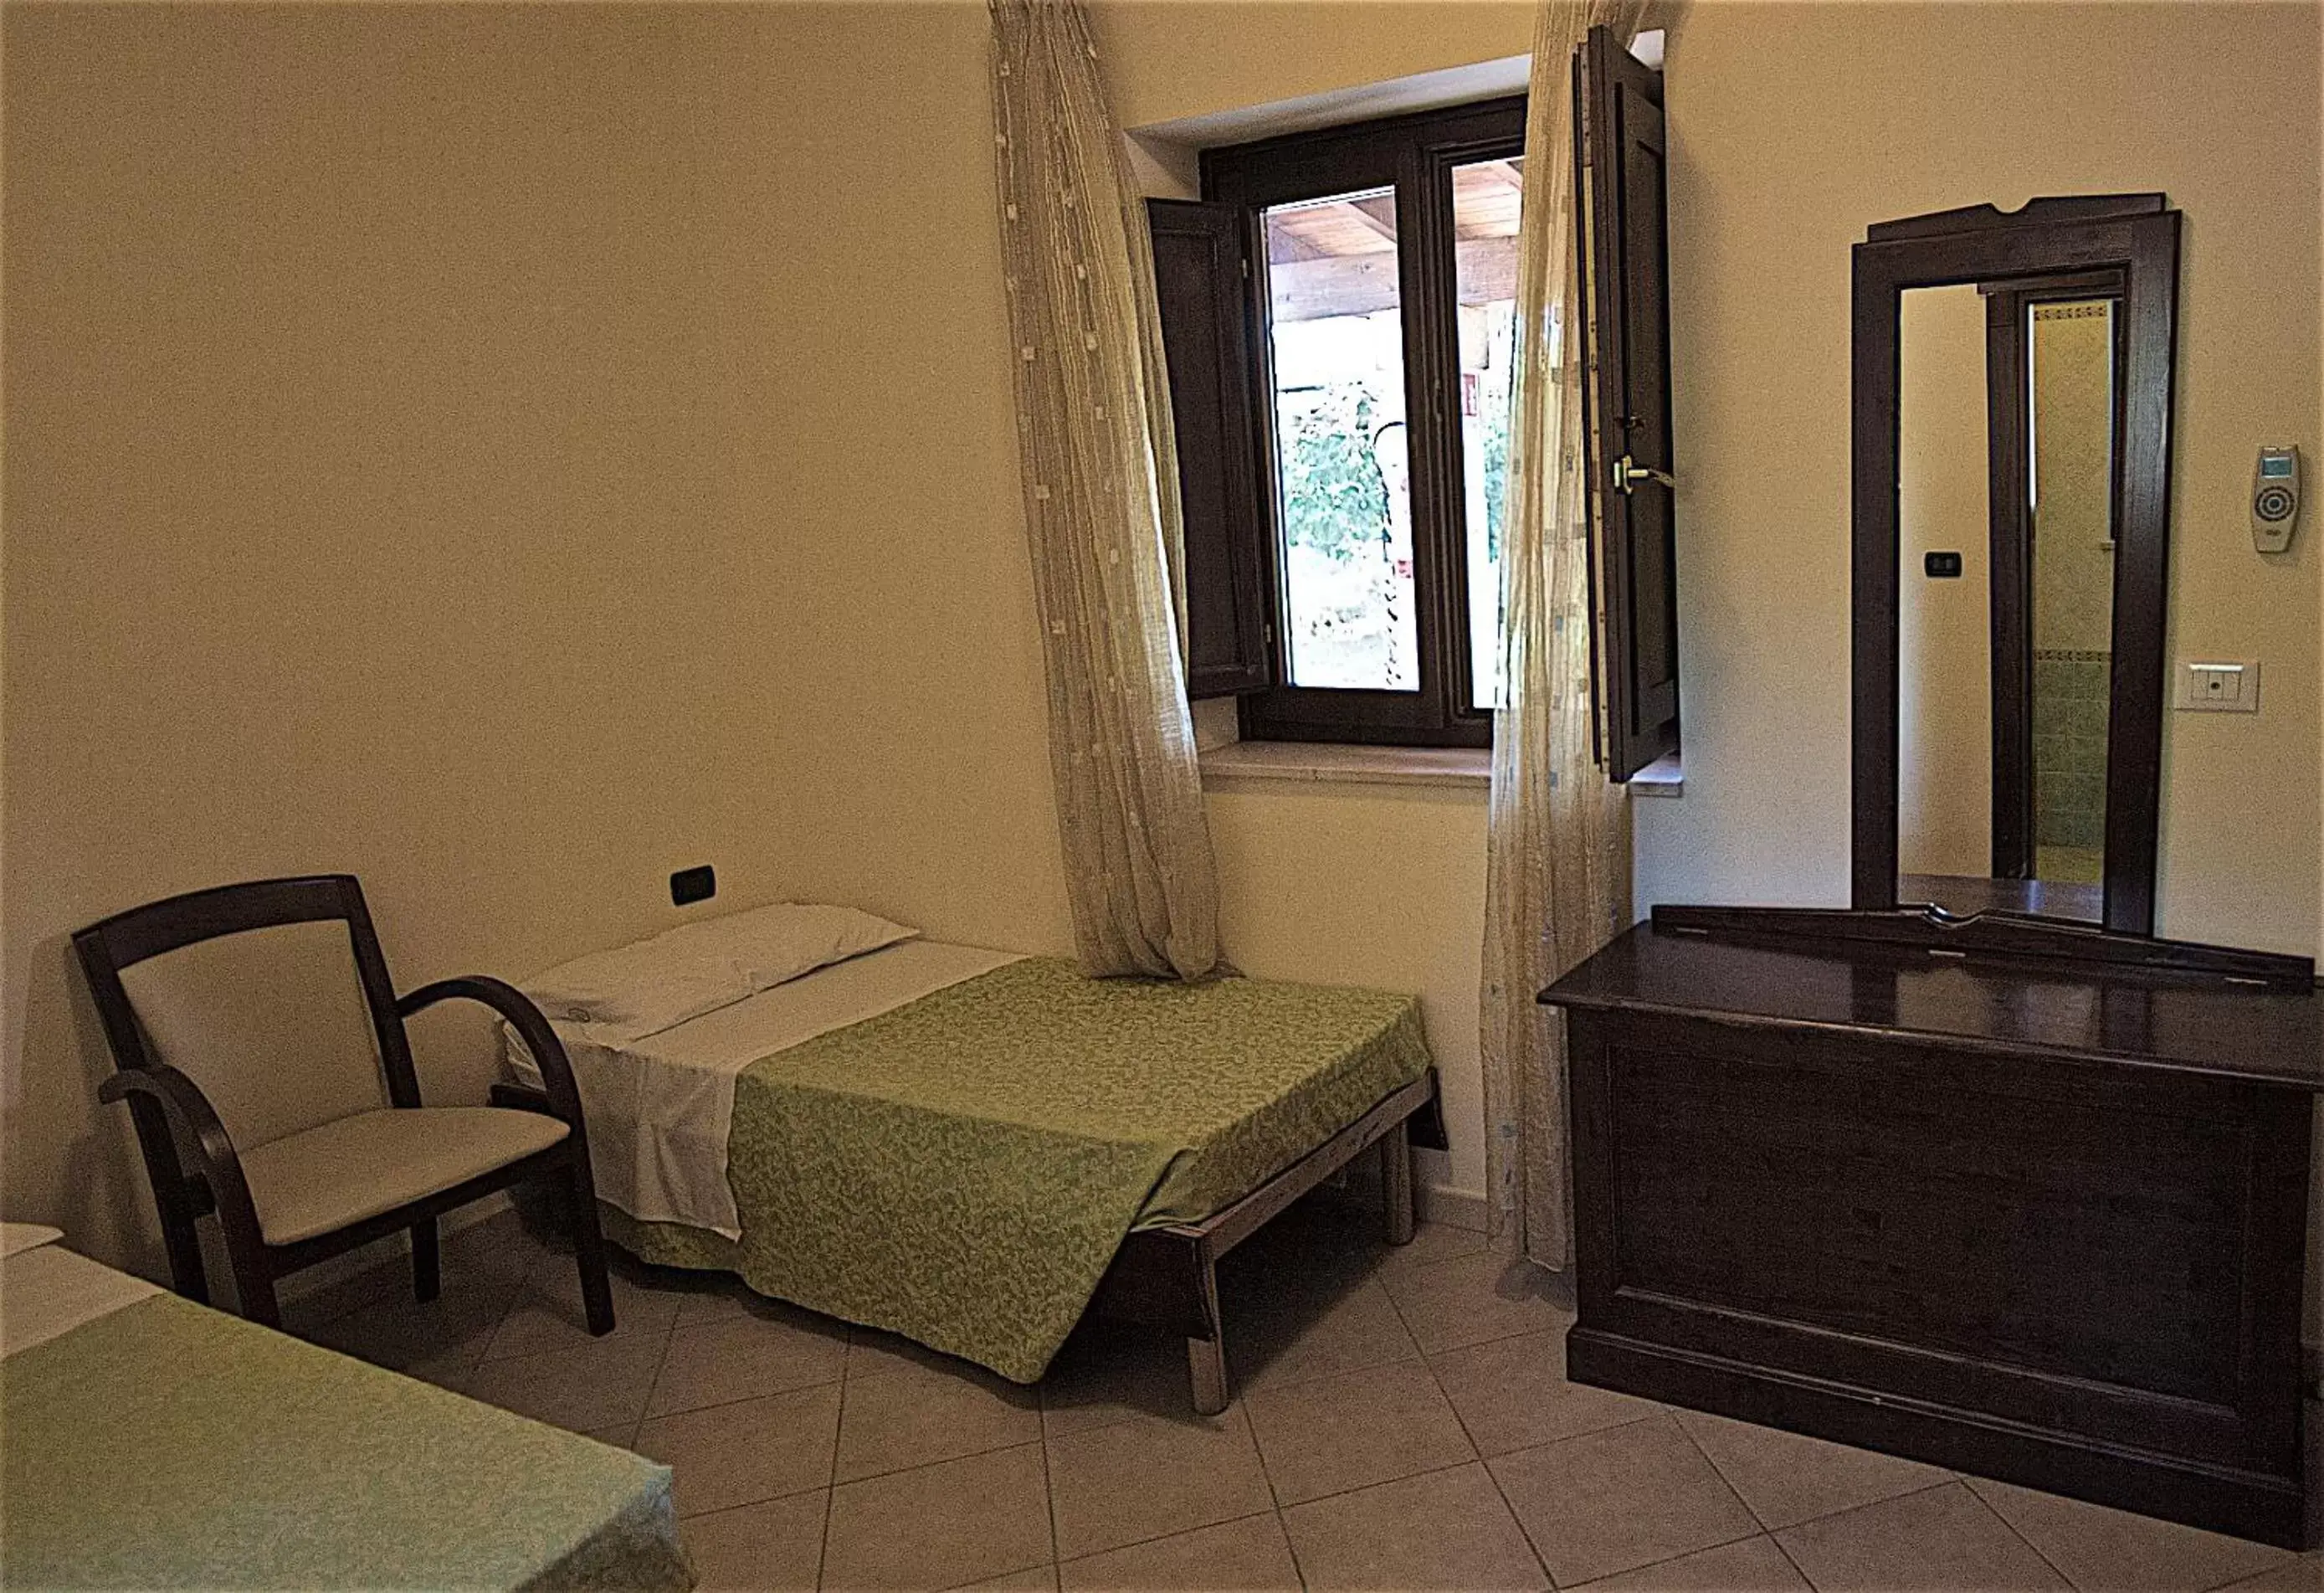 Bed, Room Photo in Hotel Masseria Le Pajare